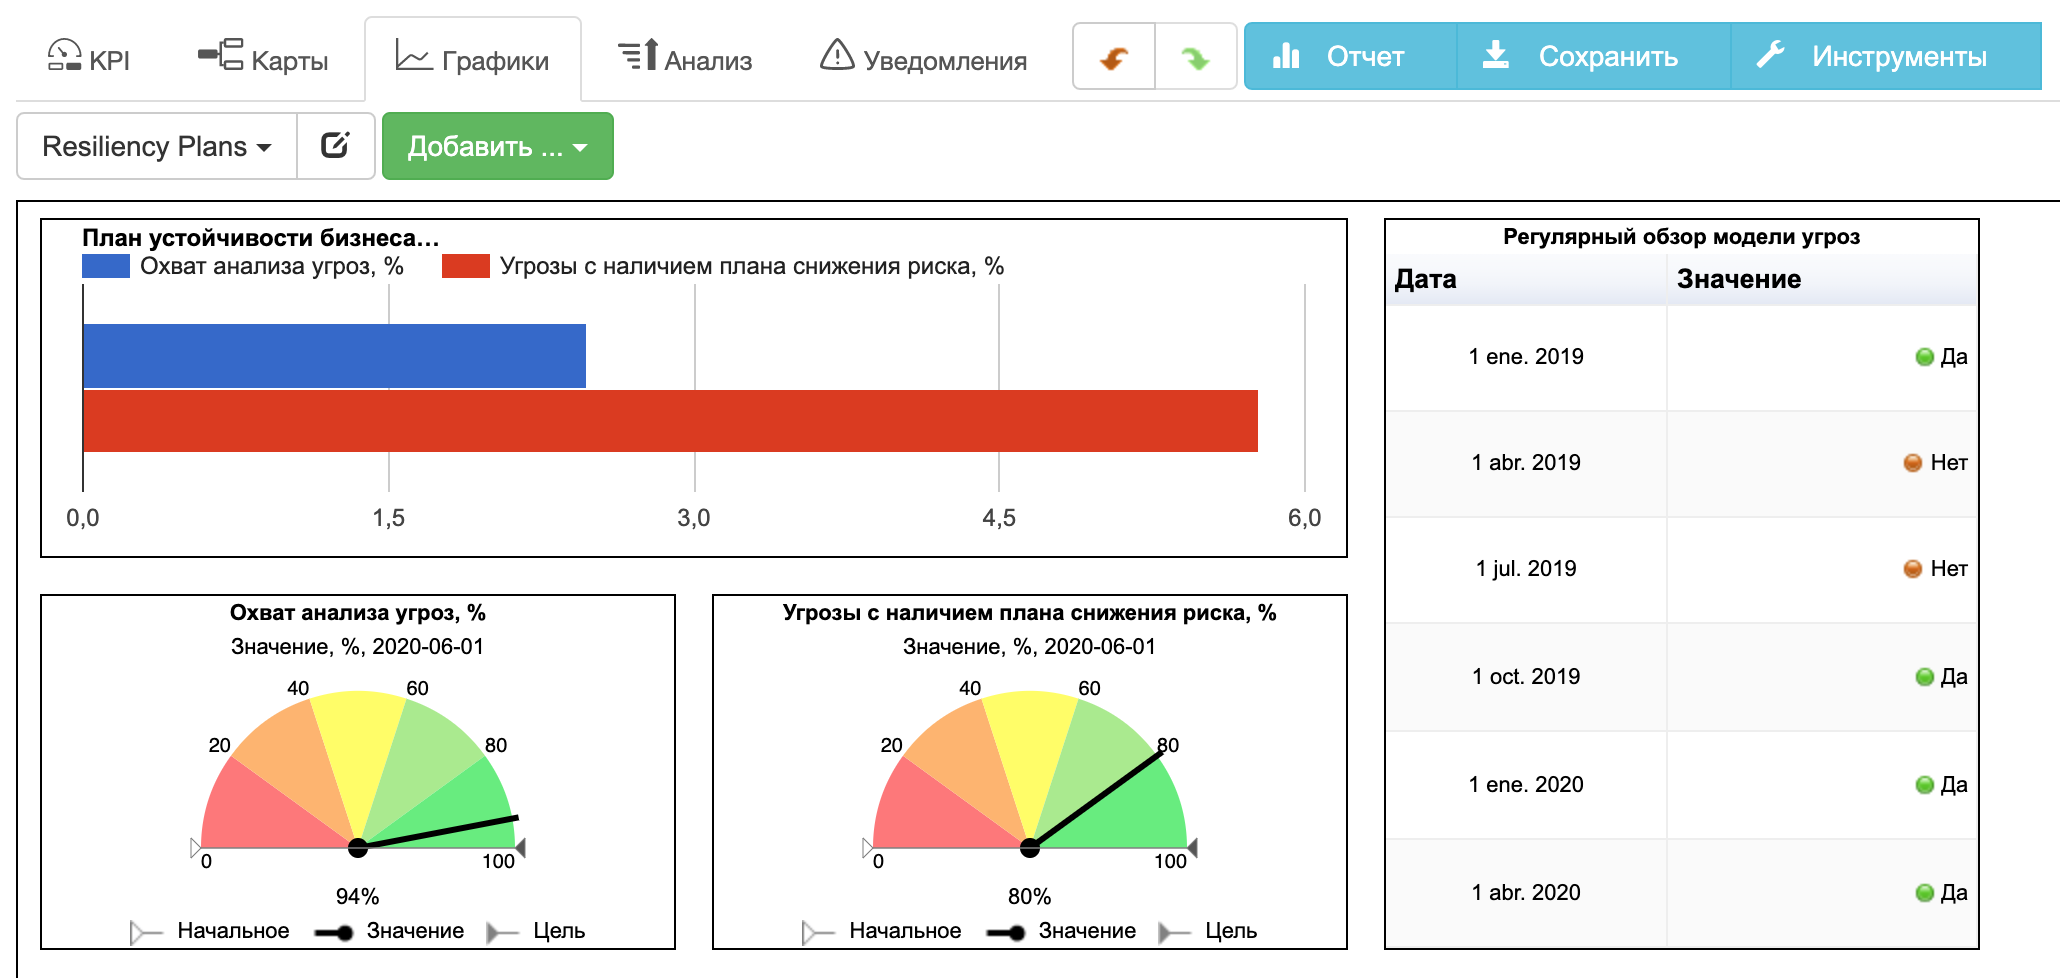 Контрольная панель с графиками для оценки устойчивости бизнеса